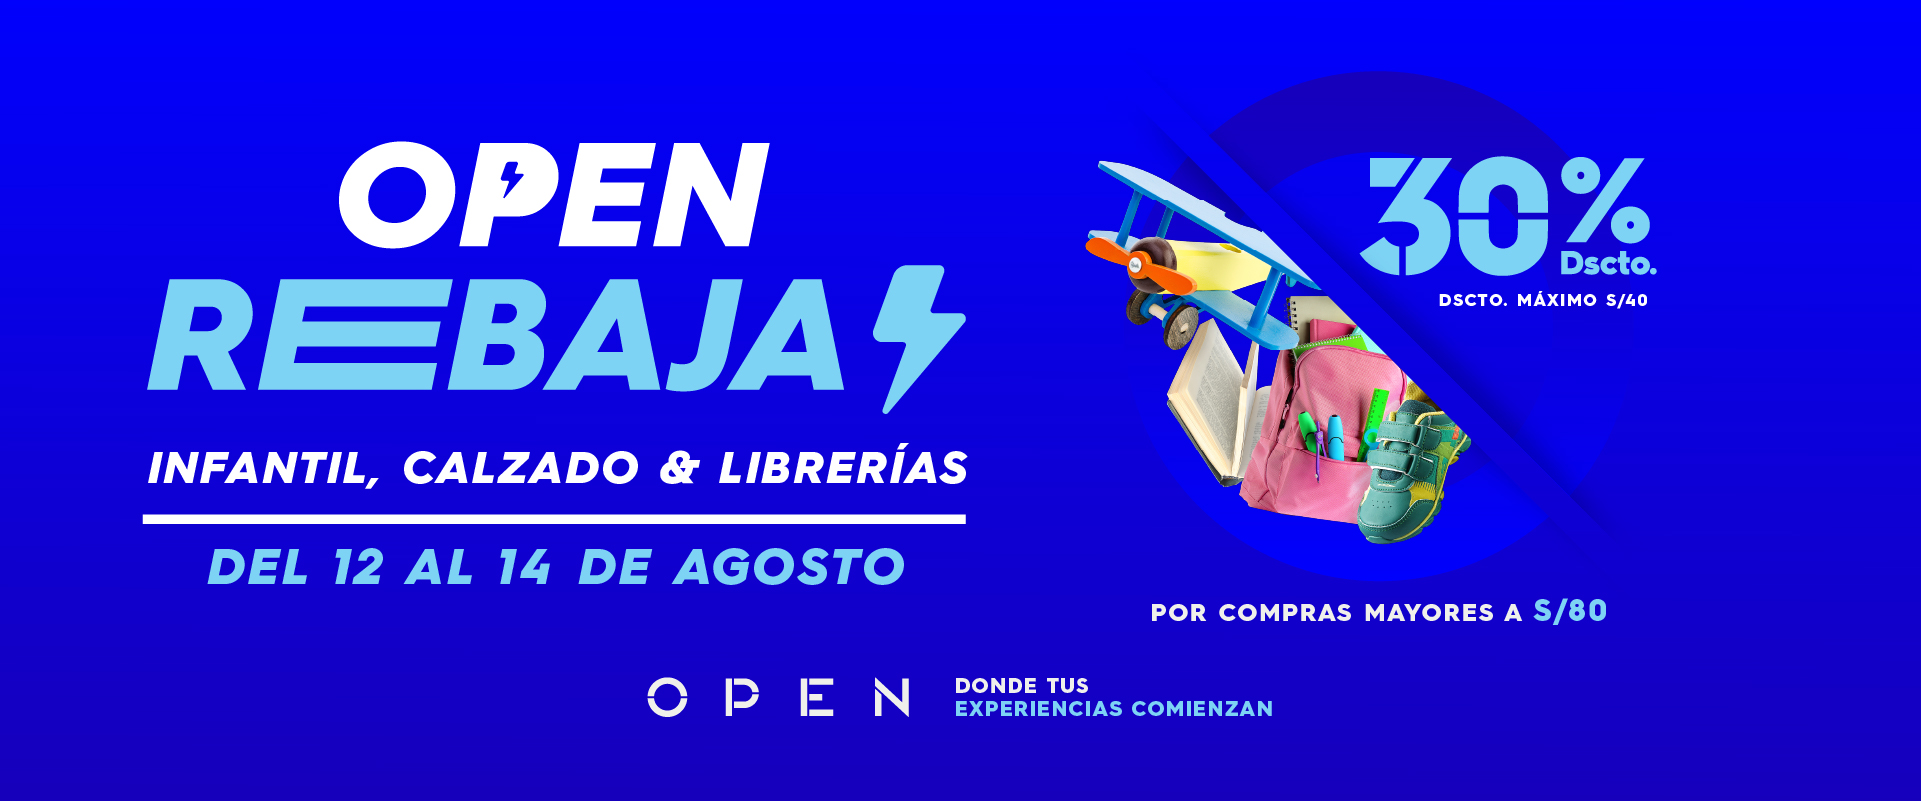 Open Rebajas Infantil, Calzado y Librerías 